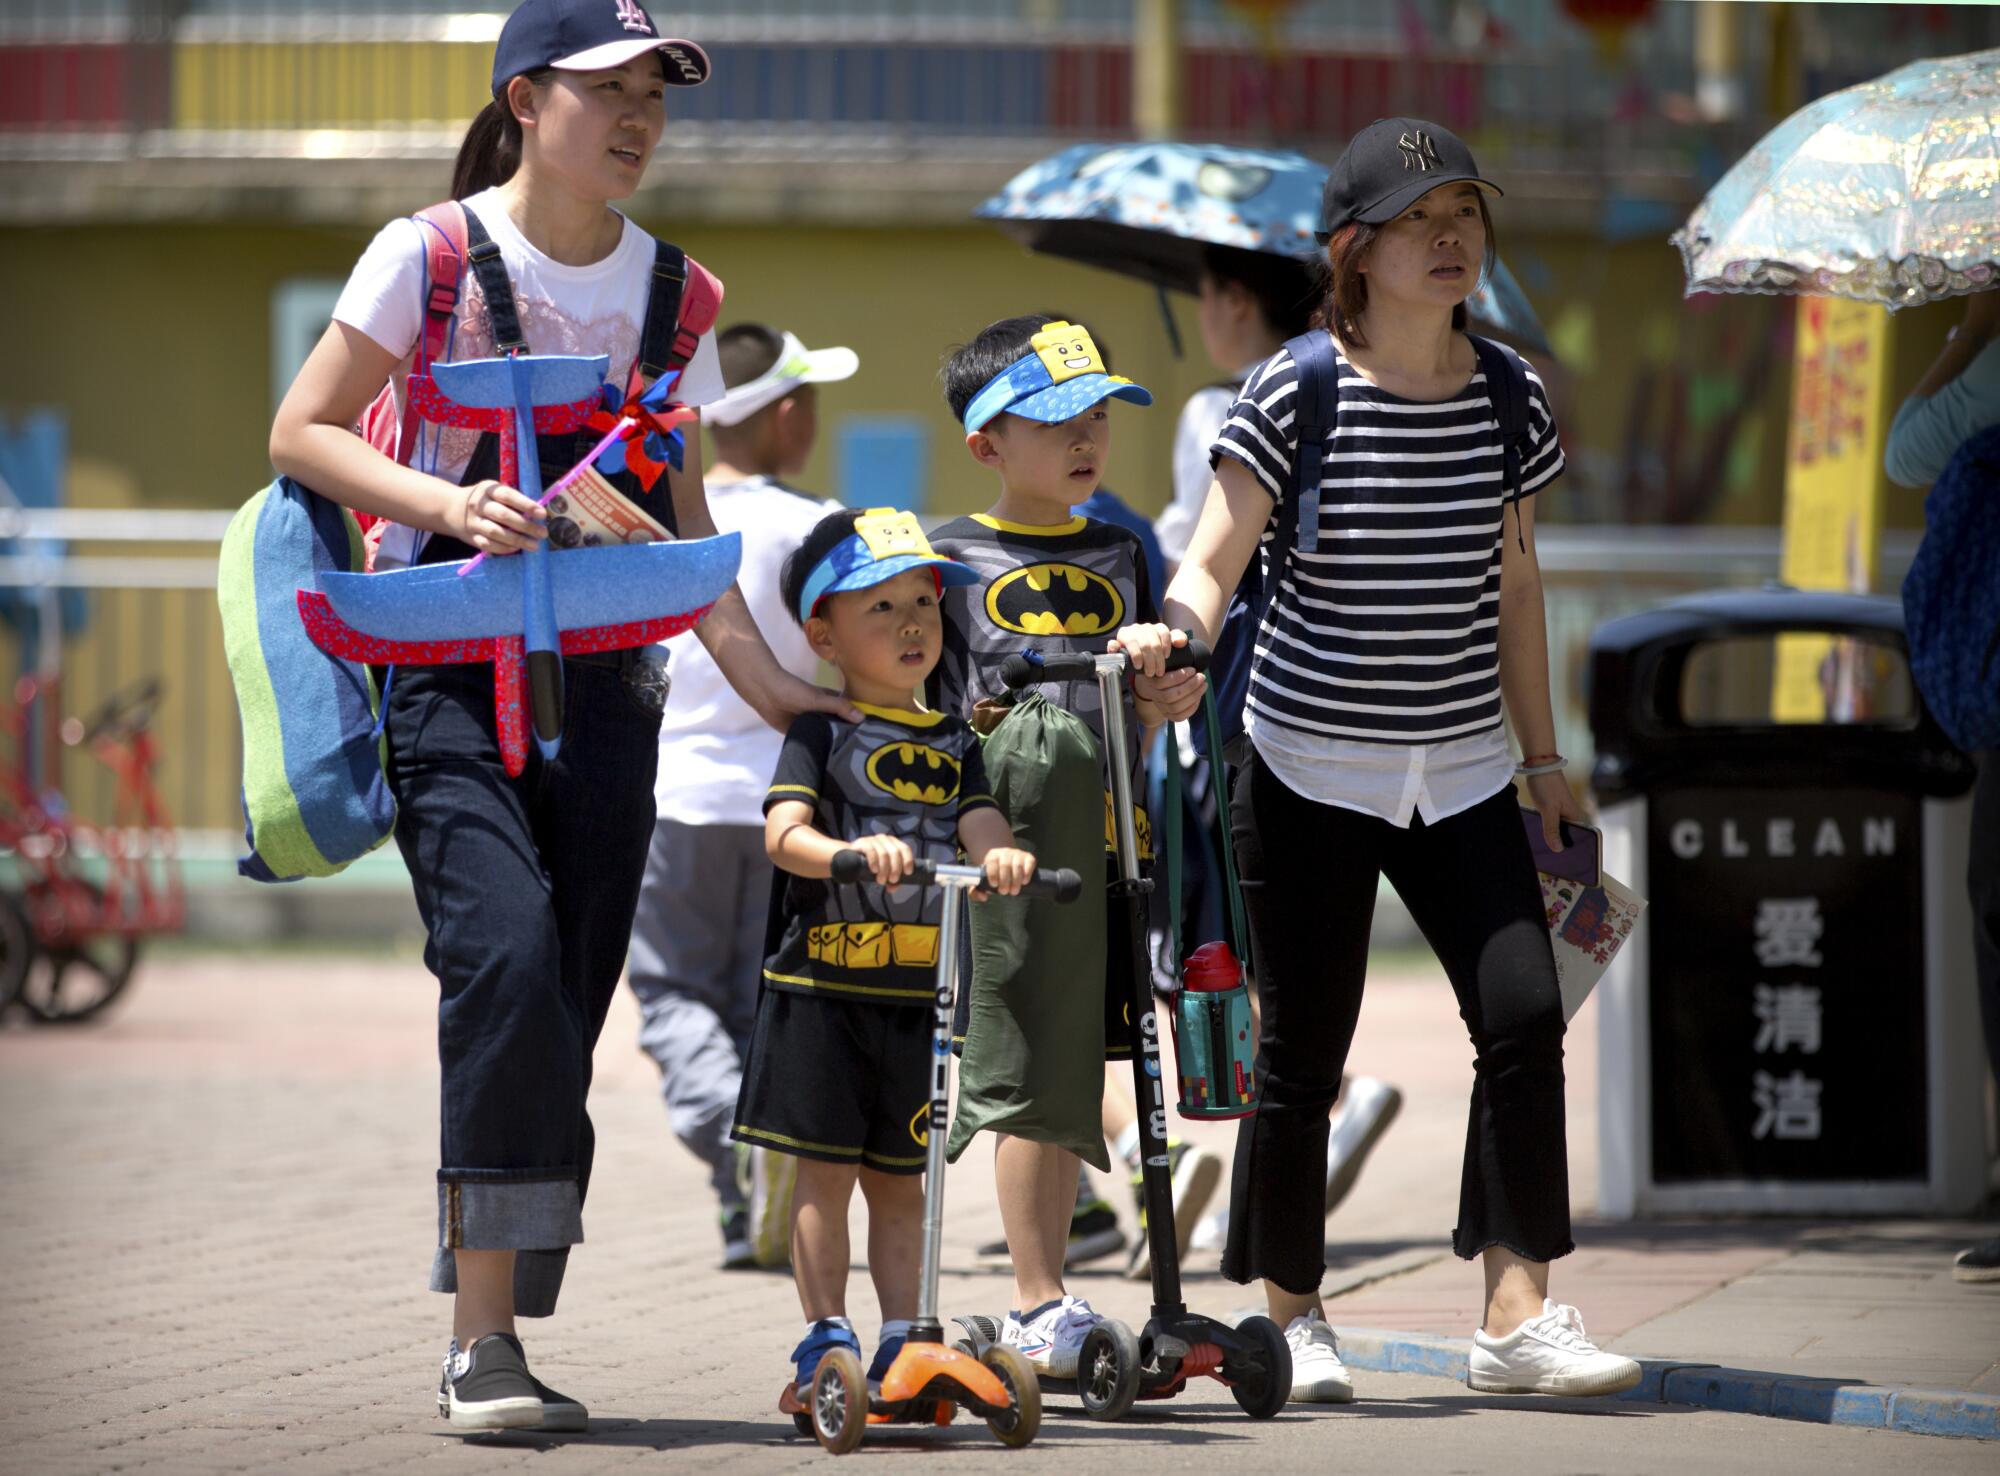 Dua perempuan, salah satunya membawa mainan, berjalan bersama anak-anak mereka dengan pakaian serasi dan mengendarai sepeda motor melewati taman umum. 